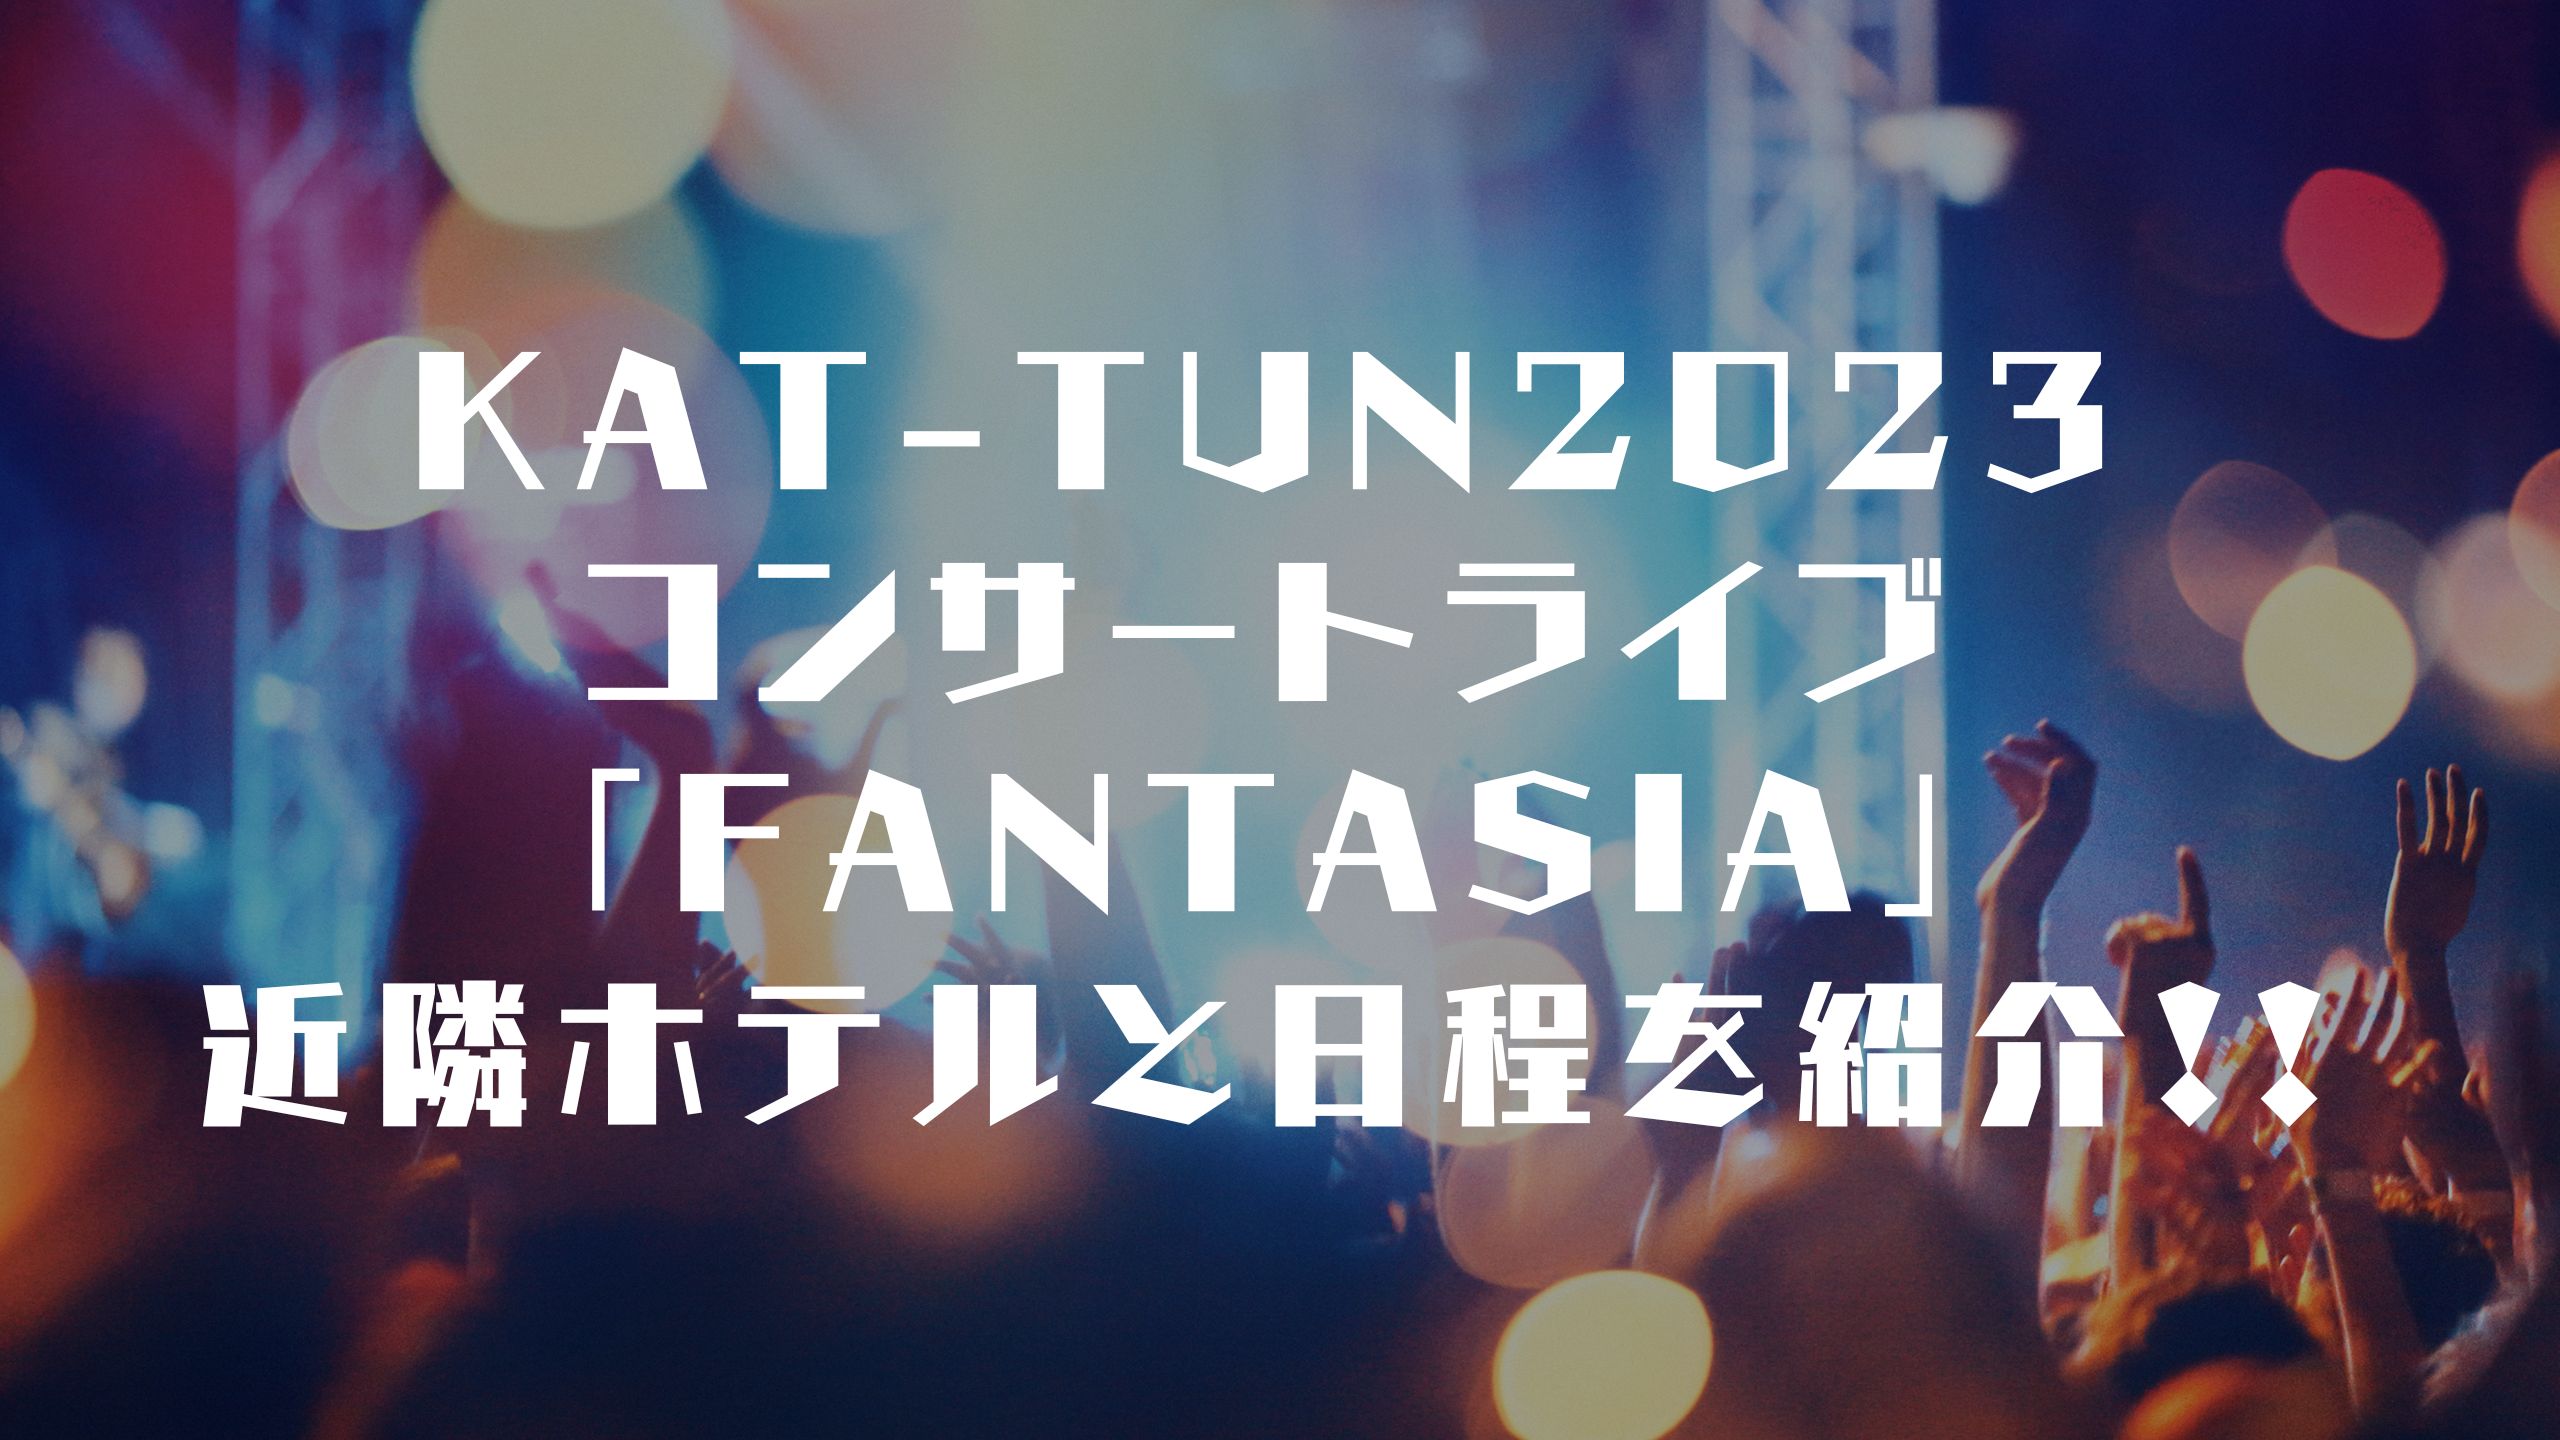 KAT-TUNのコンサートライブ近隣ホテルのまとめです。